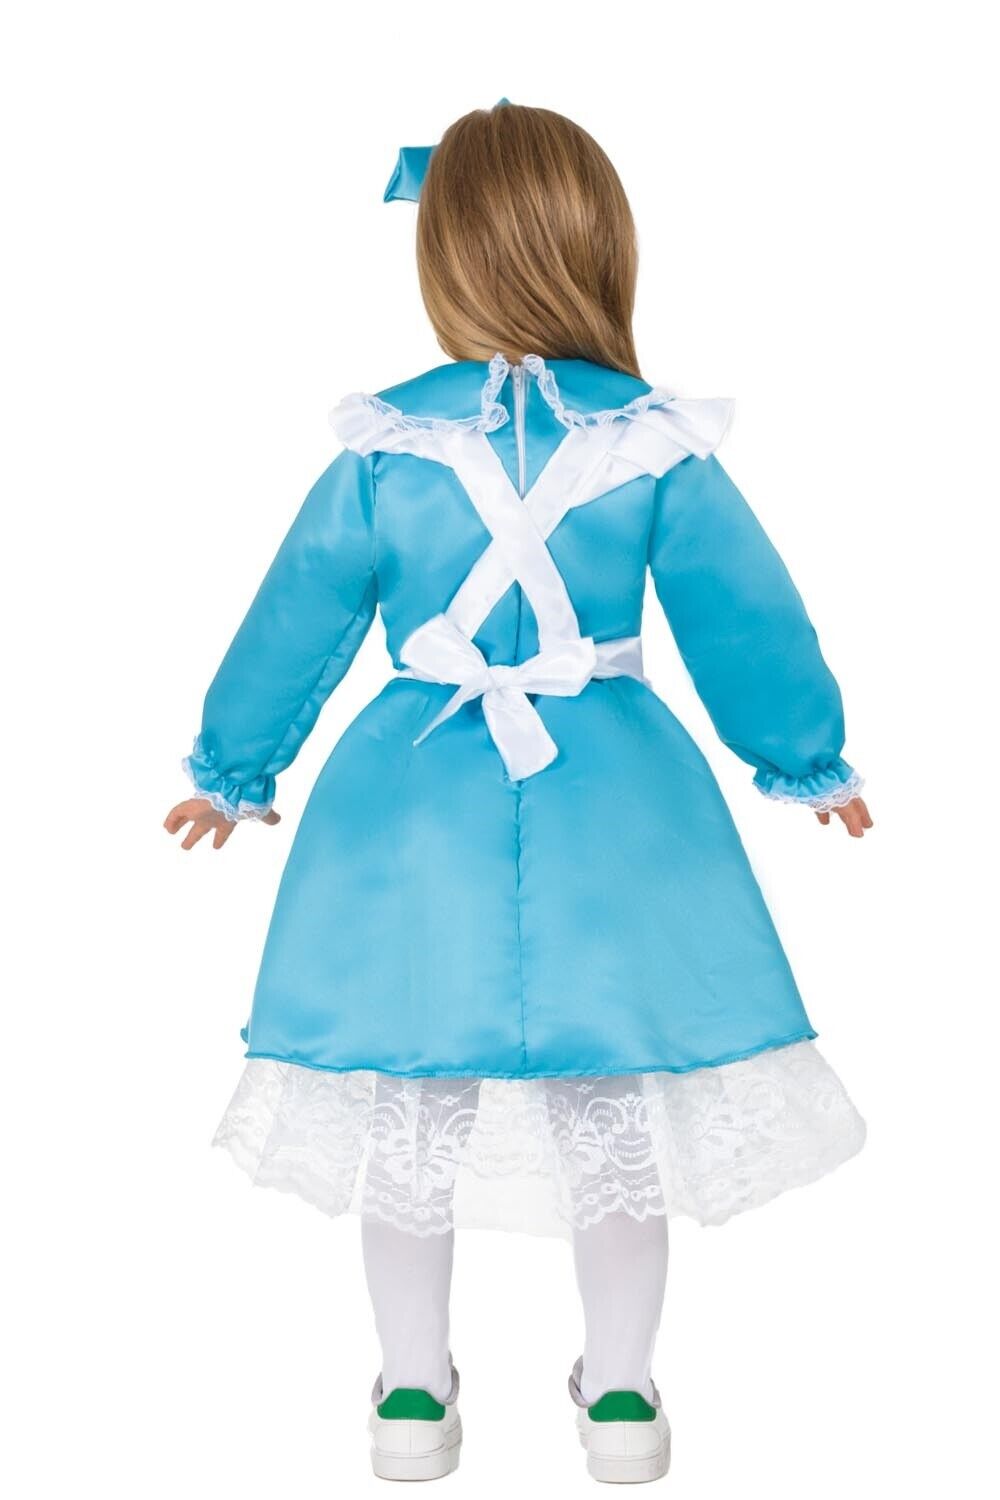 Costume Alice nel paese delle meraviglie Bambina ragazza 3-4 anni